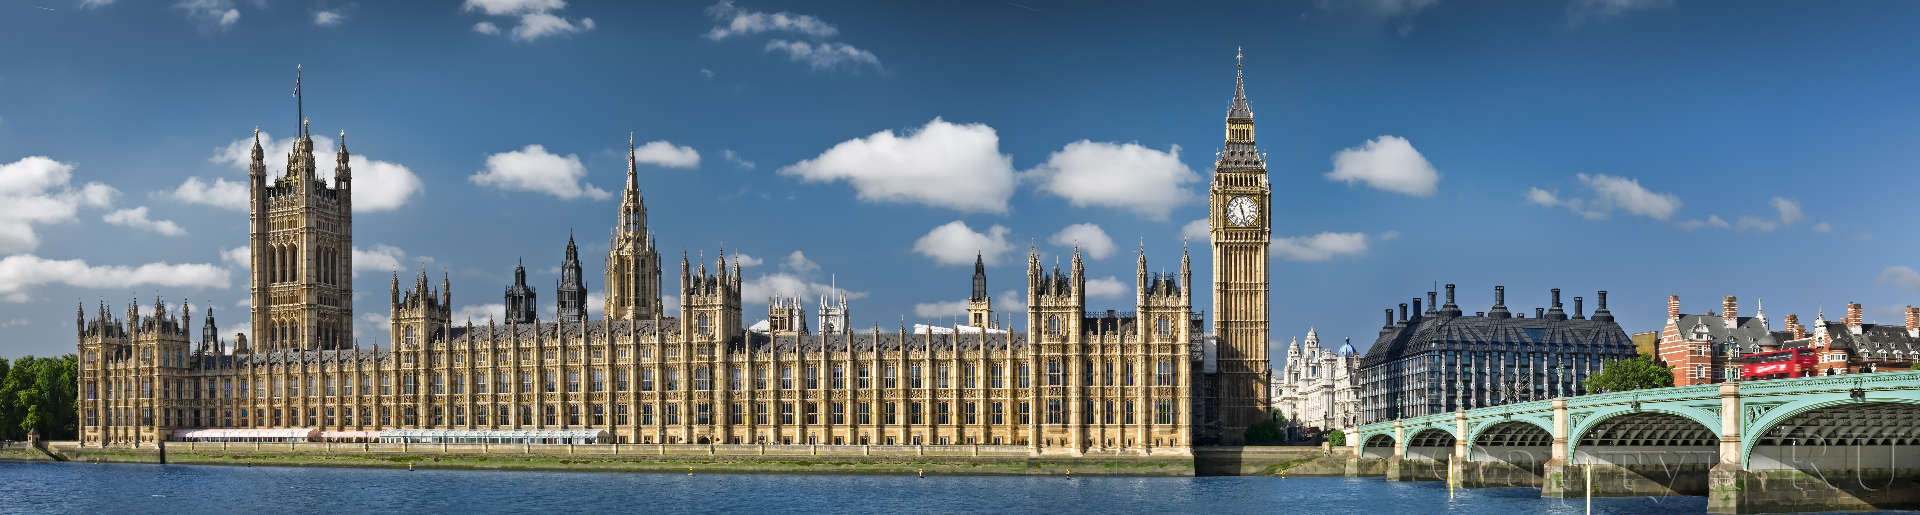 Лондон, здание парламента